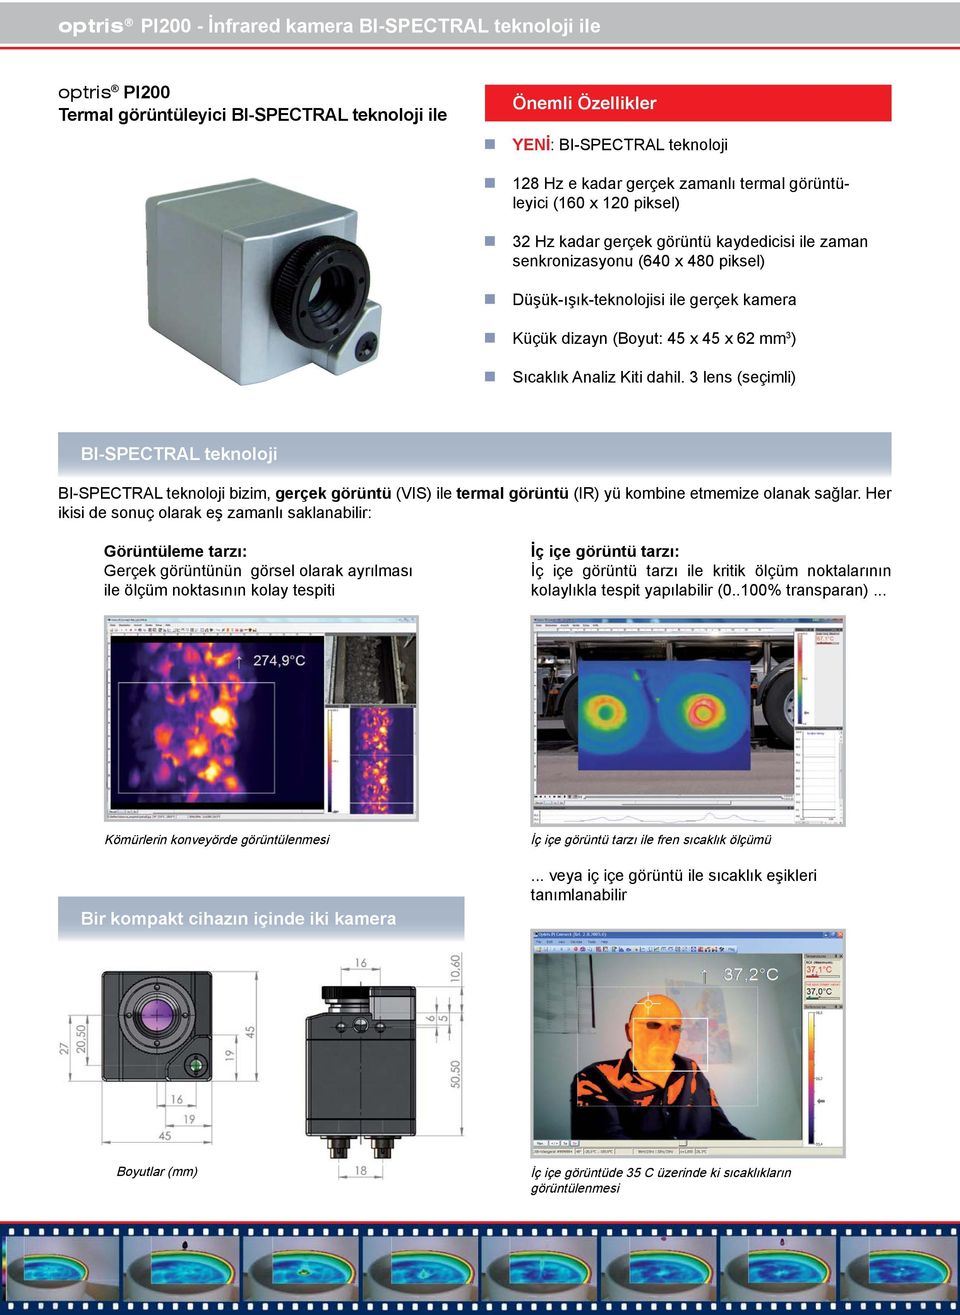 Sıcaklık Analiz Kiti dahil. 3 lens (seçimli) BI-SPECTRAL teknoloji BI-SPECTRAL teknoloji bizim, gerçek görüntü (VIS) ile termal görüntü (IR) yü kombine etmemize olanak sağlar.